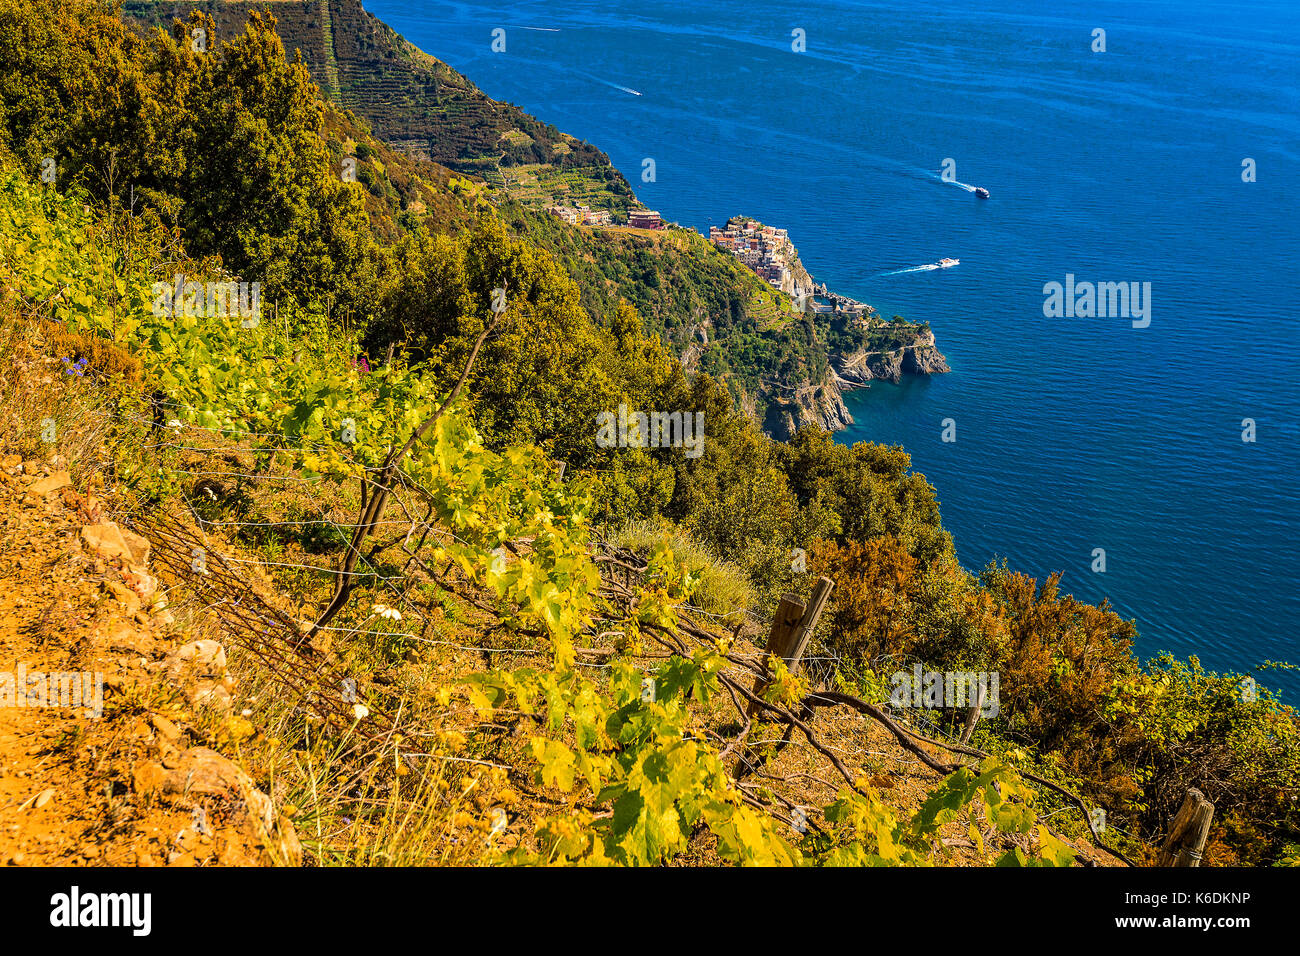 Italy Liguria 5 Terre National Park - Mararola seen from Volastra Stock Photo